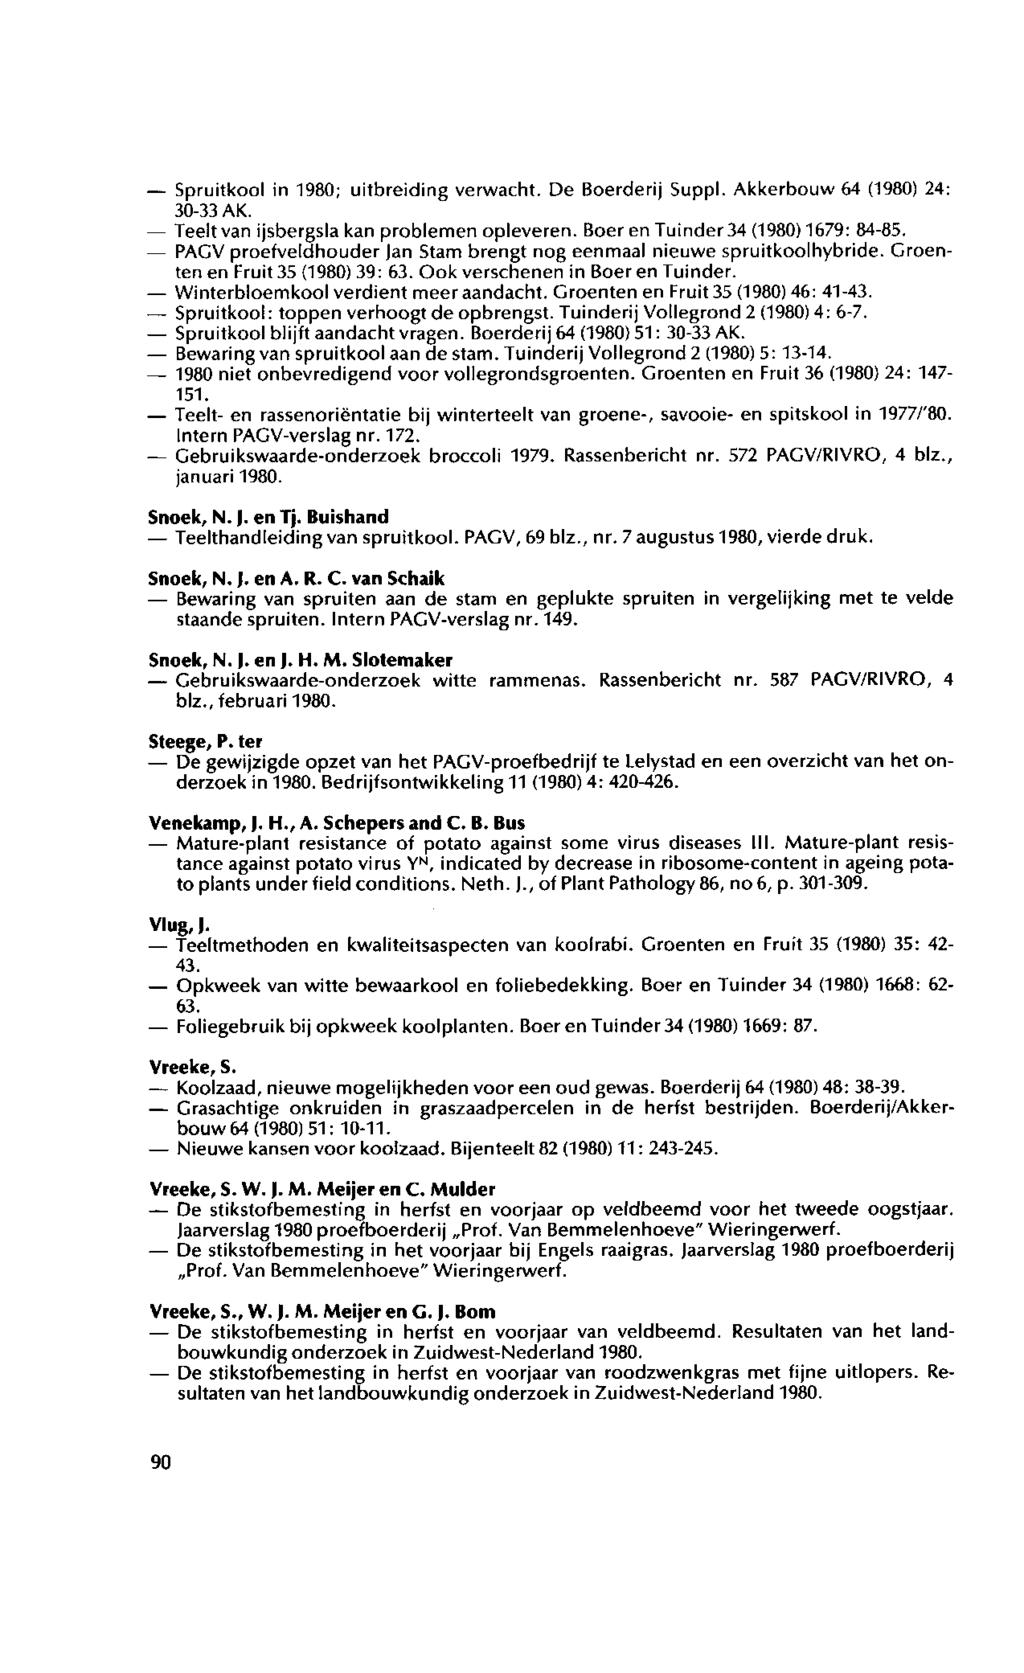 Spruitkool in 1980; uitbreiding verwacht. De Boerderij Suppl. Akkerbouw 64 (1980) 24: 30-33 AK. Teelt van ijsbergsla kan problemen opleveren. Boer en Tuinder 34 (1980)1679: 84-85.